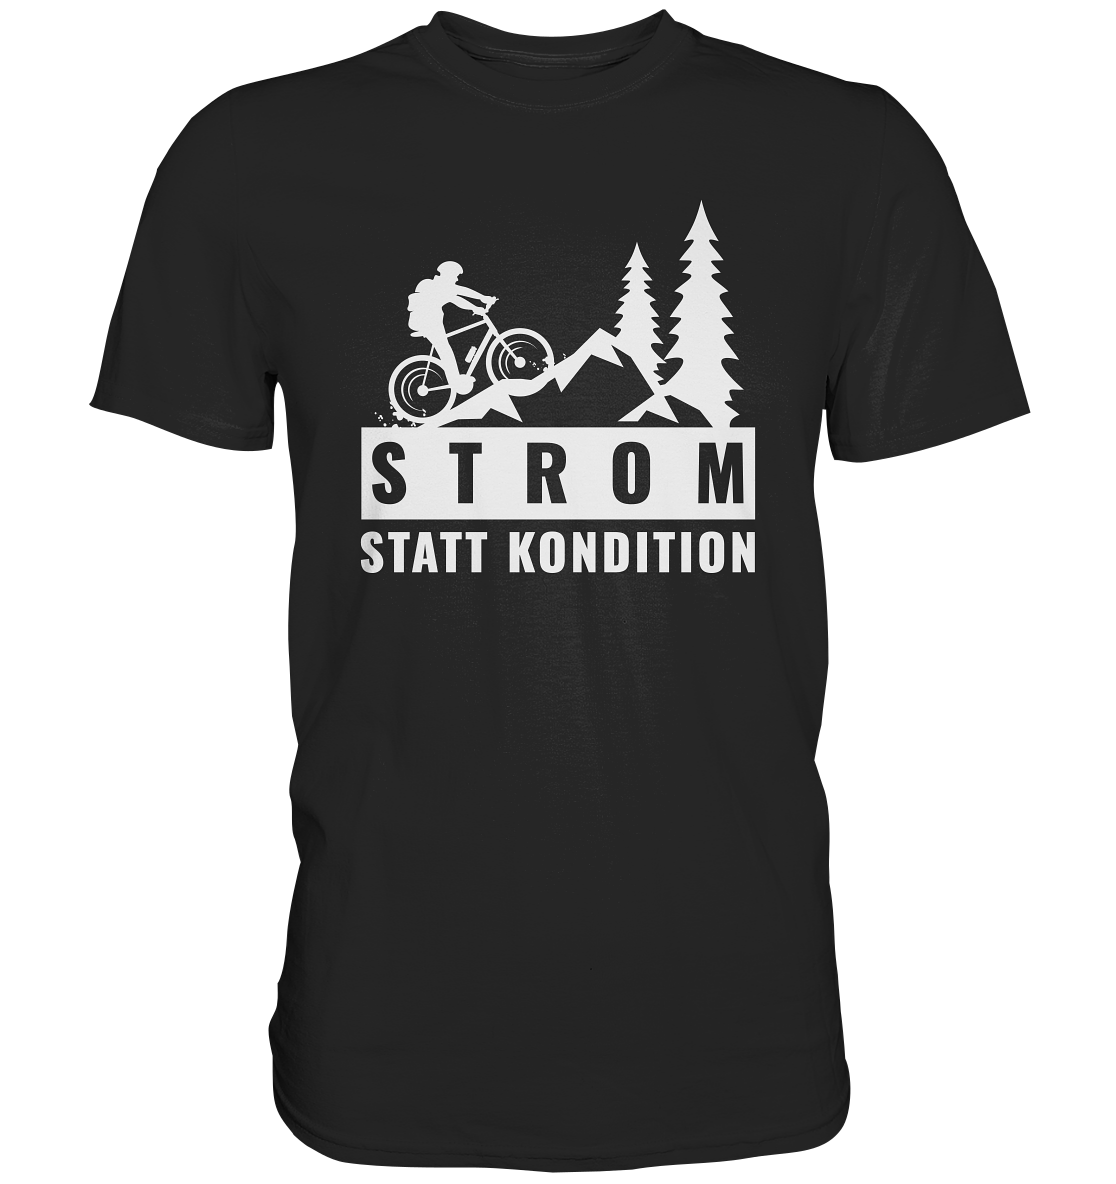 STROM STATT KONDITION - Premium Shirt